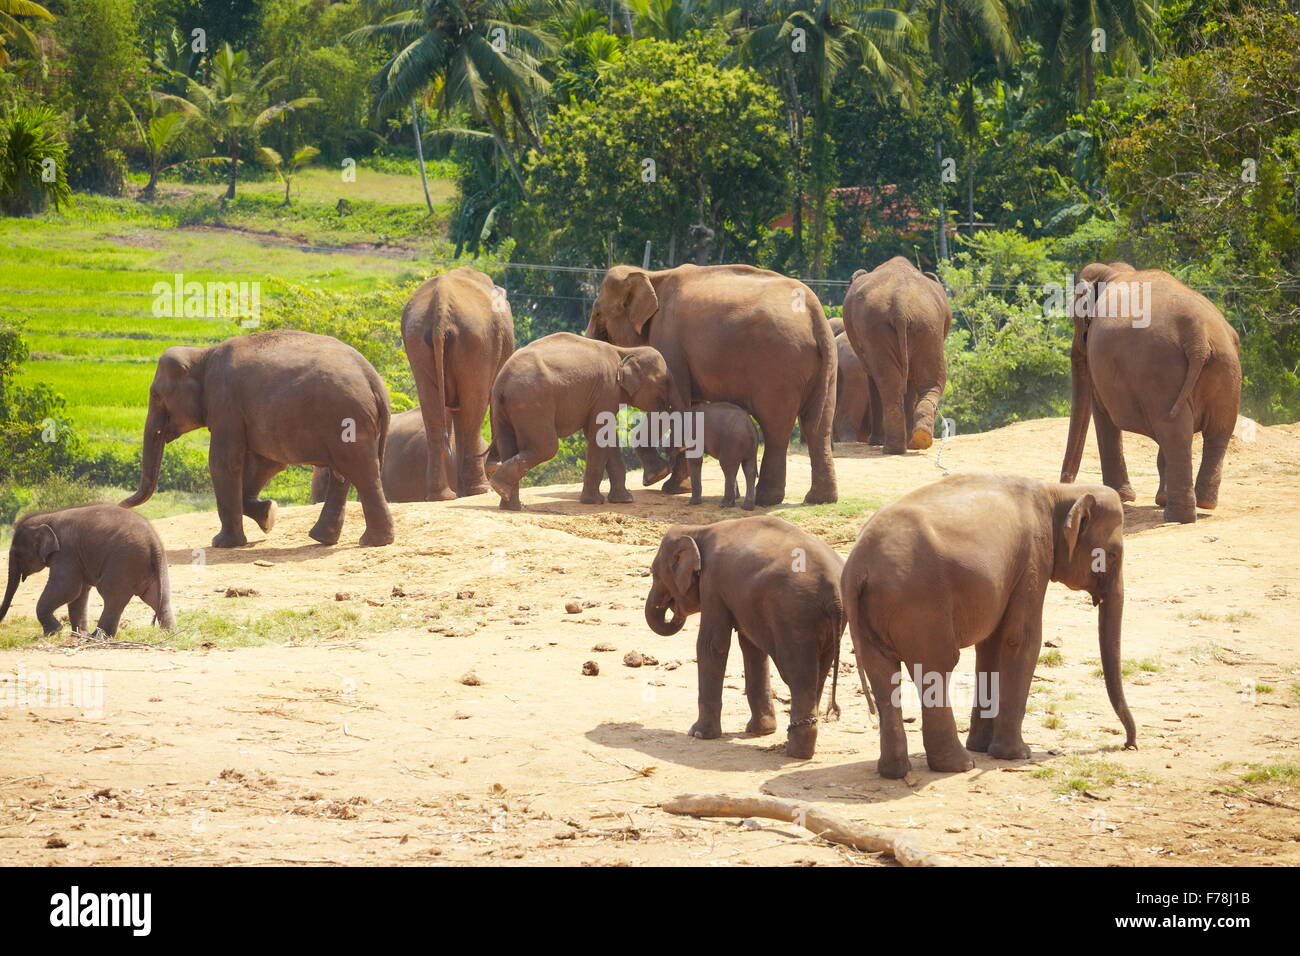 Pinnawela Elephant Orphanage for wild Asian elephants, Sri Lanka Stock Photo